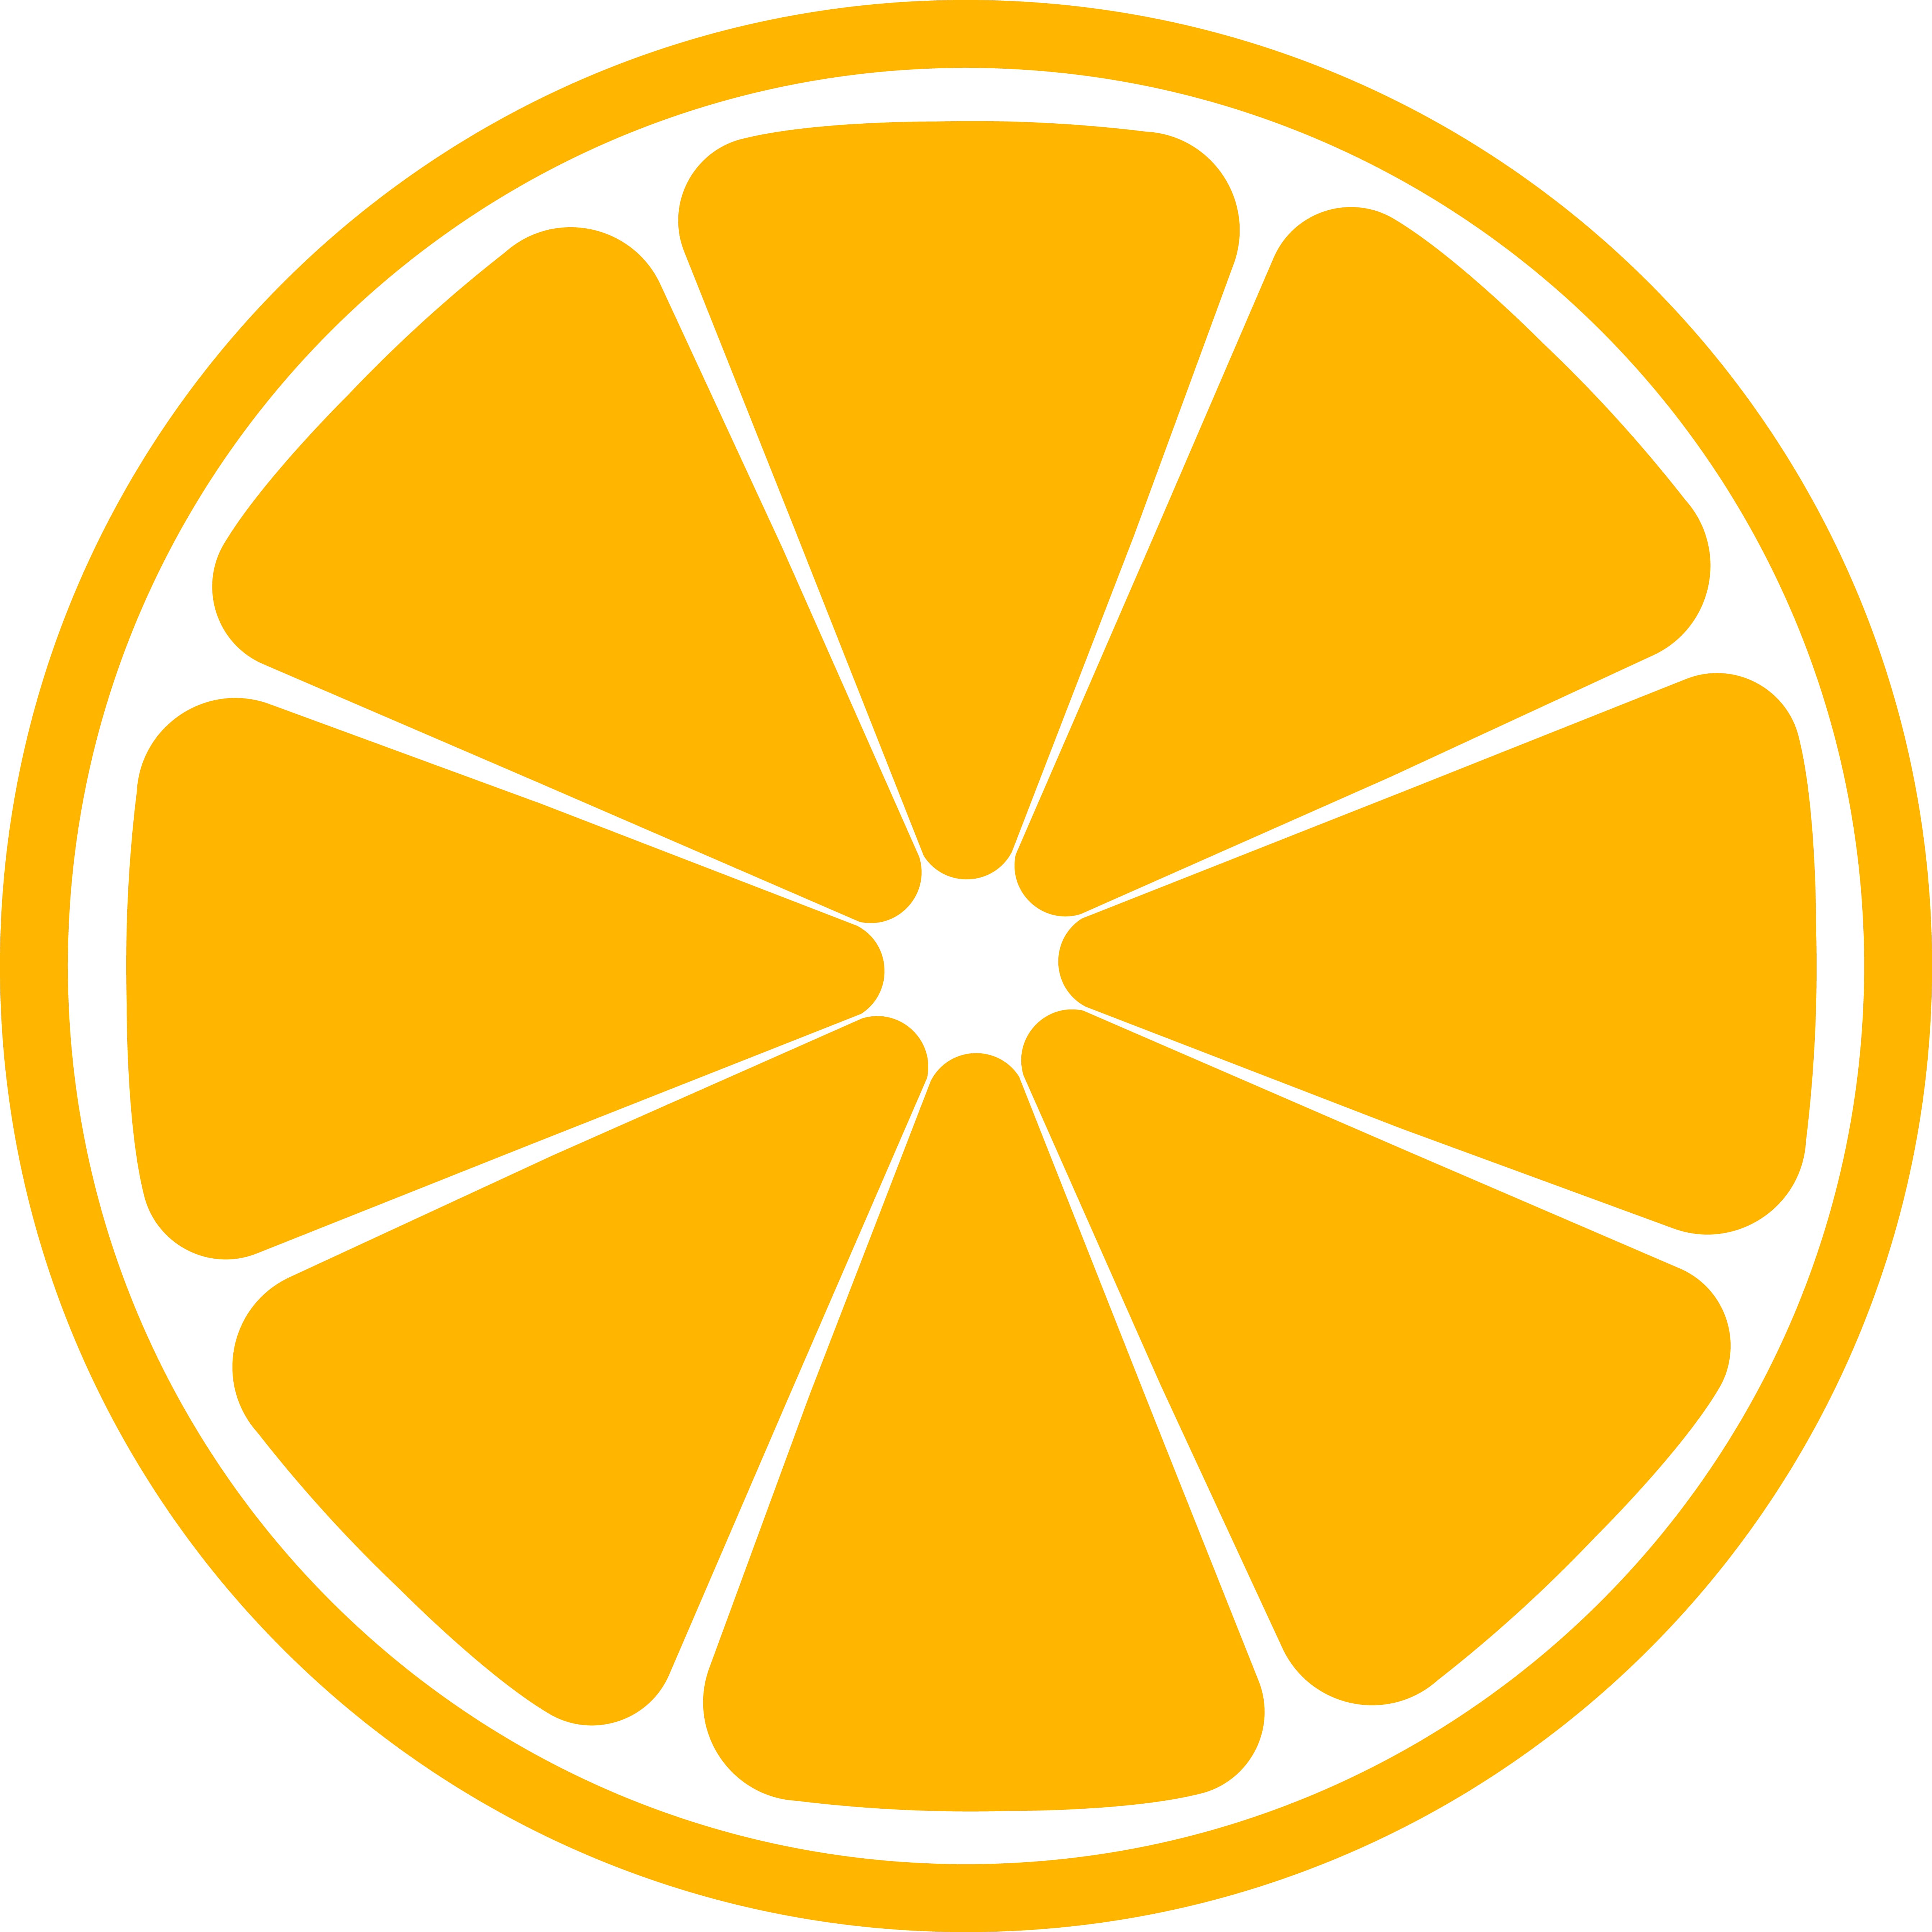 Образец раскрашенной картинки круглая долька апельсина